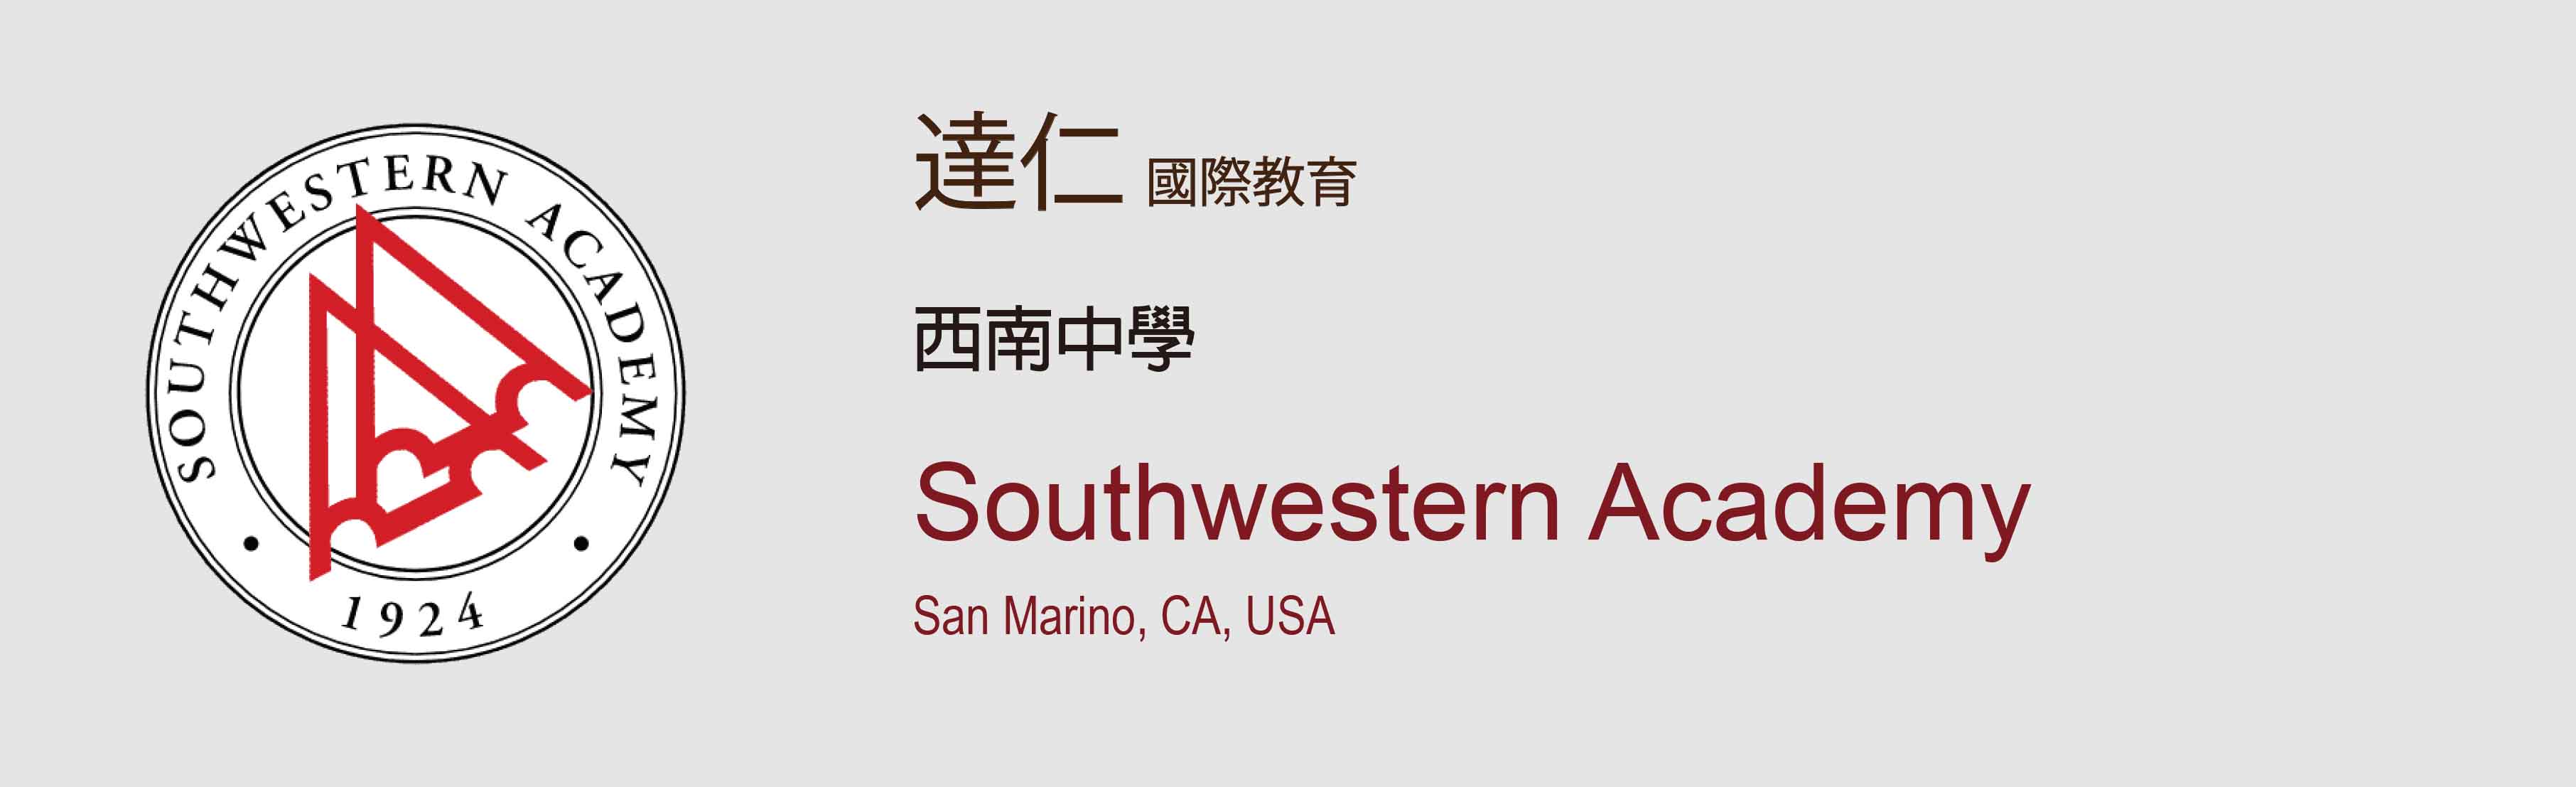 西南中學 Southwestern Academy